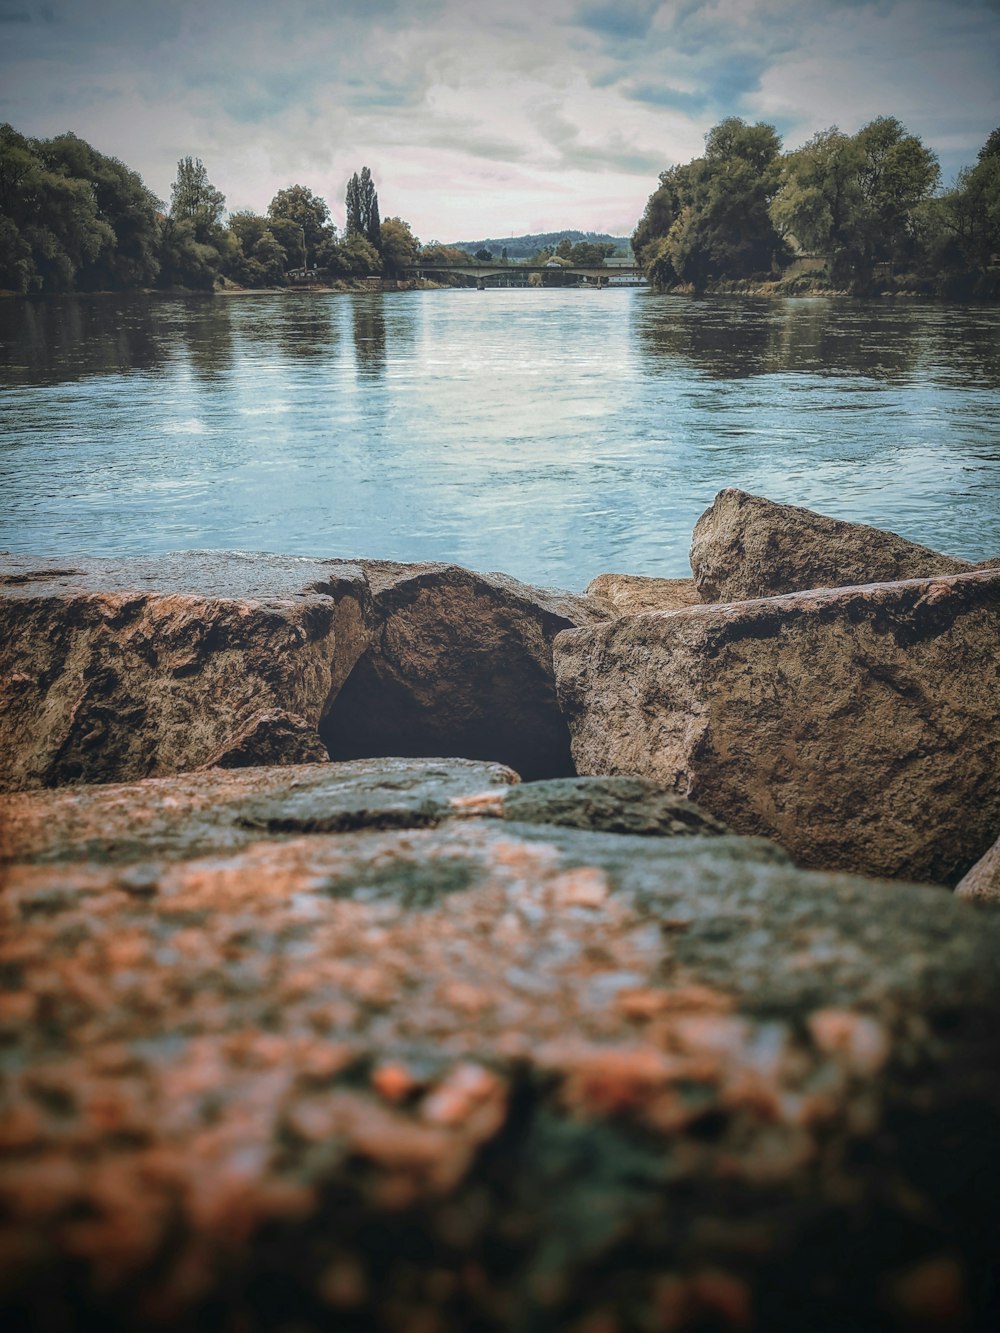 Photographie en contre-plongée de pierres près d’un plan d’eau pendant la journée